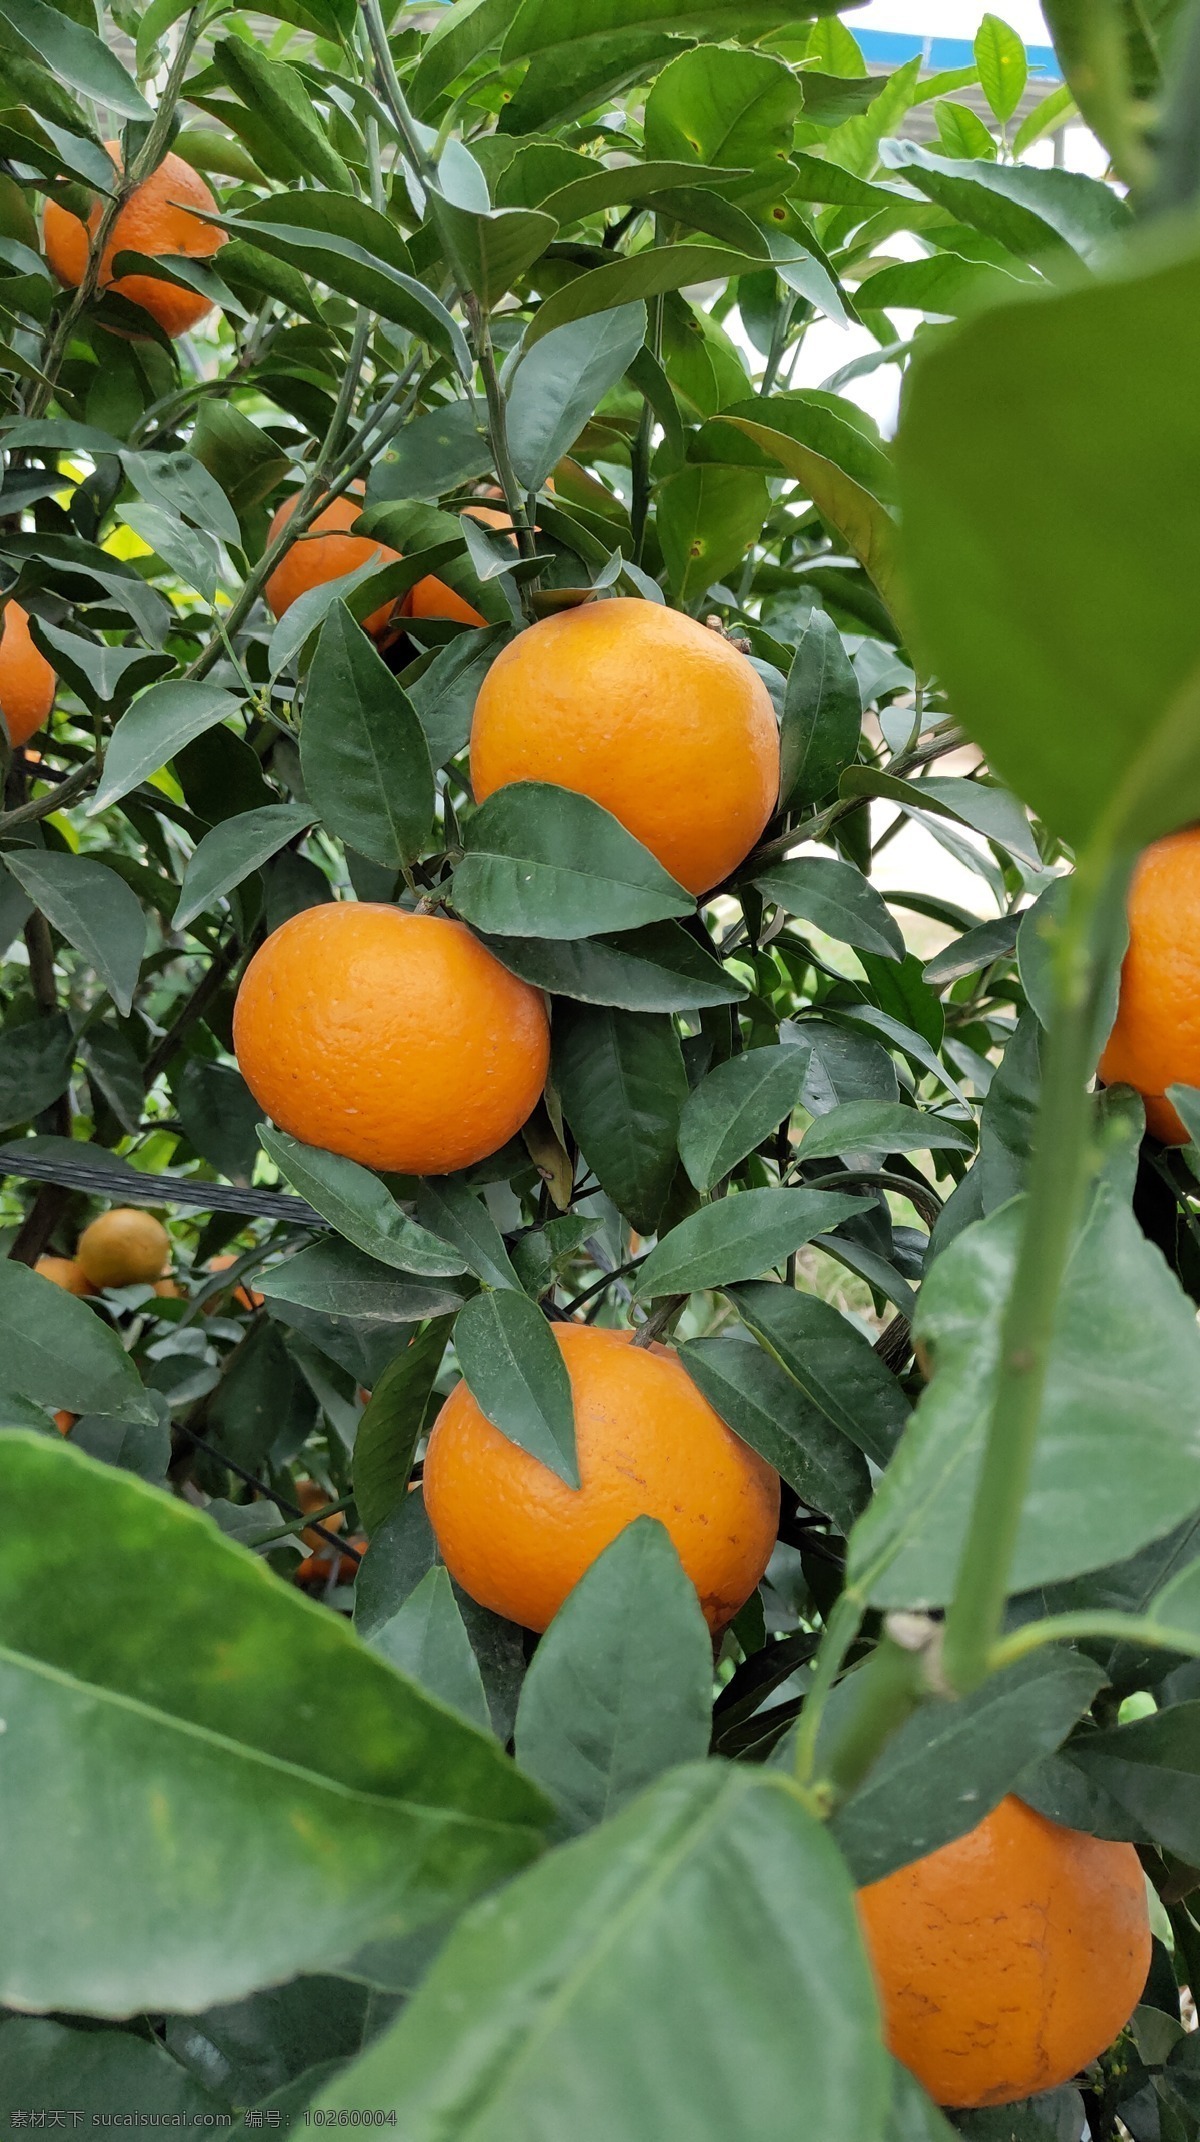 广西沃柑图片 柑橘 柑果 水果 果树 柑桔 生活百科 生活素材